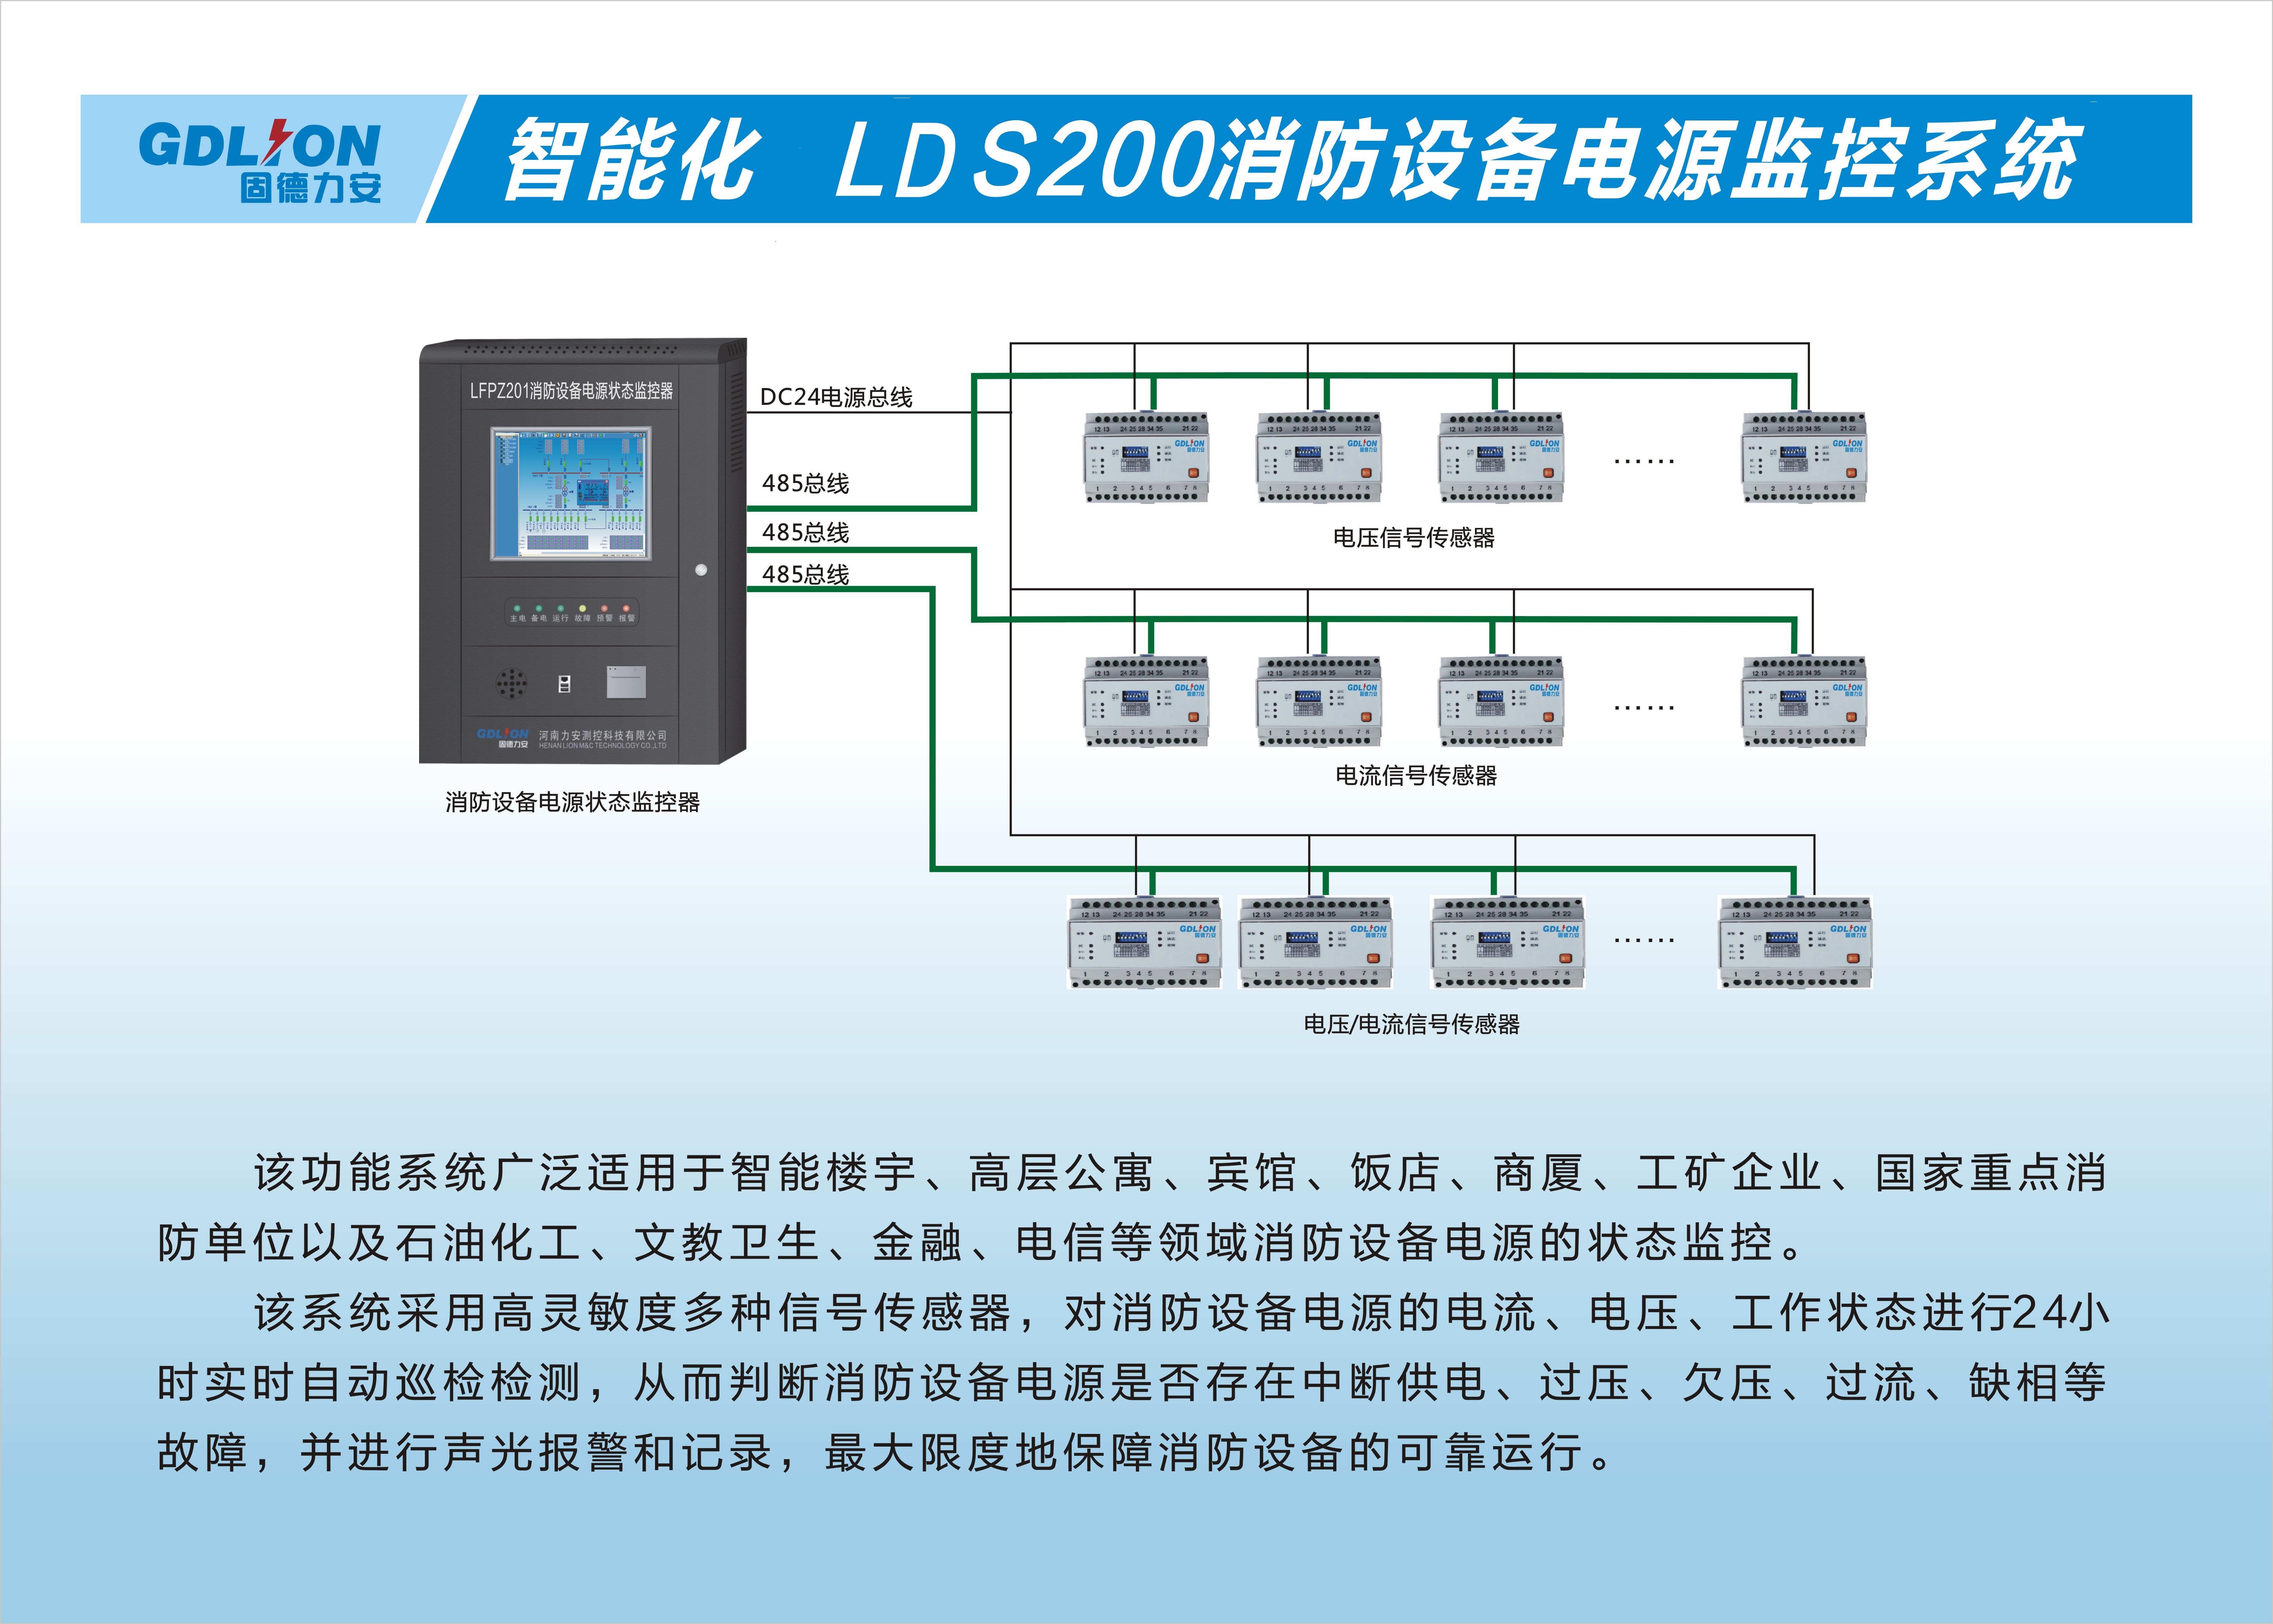 LDS200消防设备电源监控系统